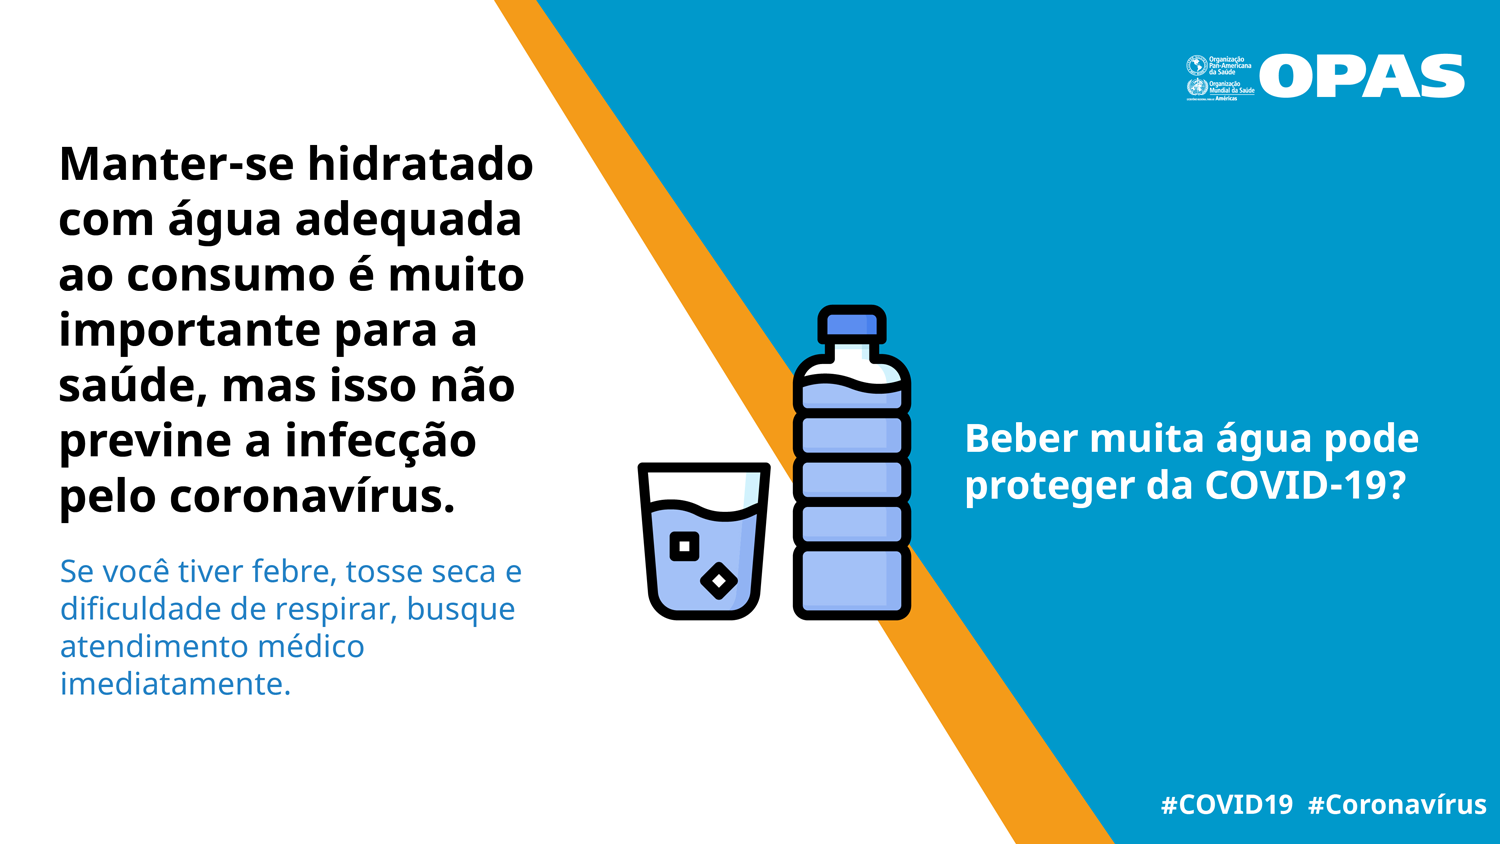 Manter-se hidratado com água adequada ao consumo é muito importante para a saúde, mas isso não previne a infecção pelo coronavírus.